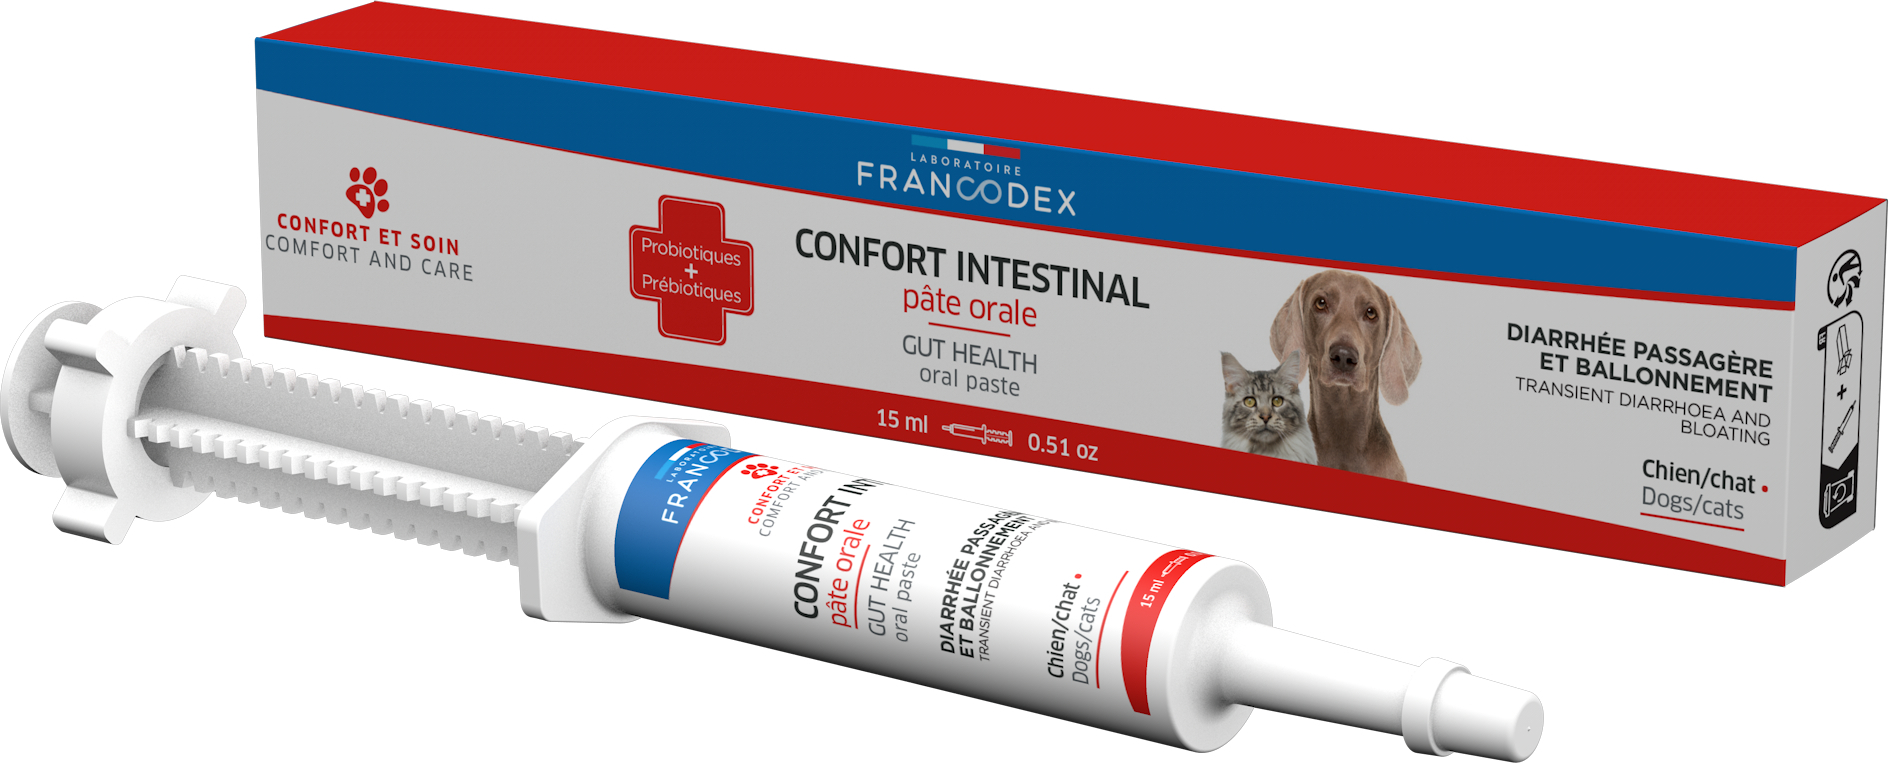 Francodex Confort Intestinal pour chien et chat